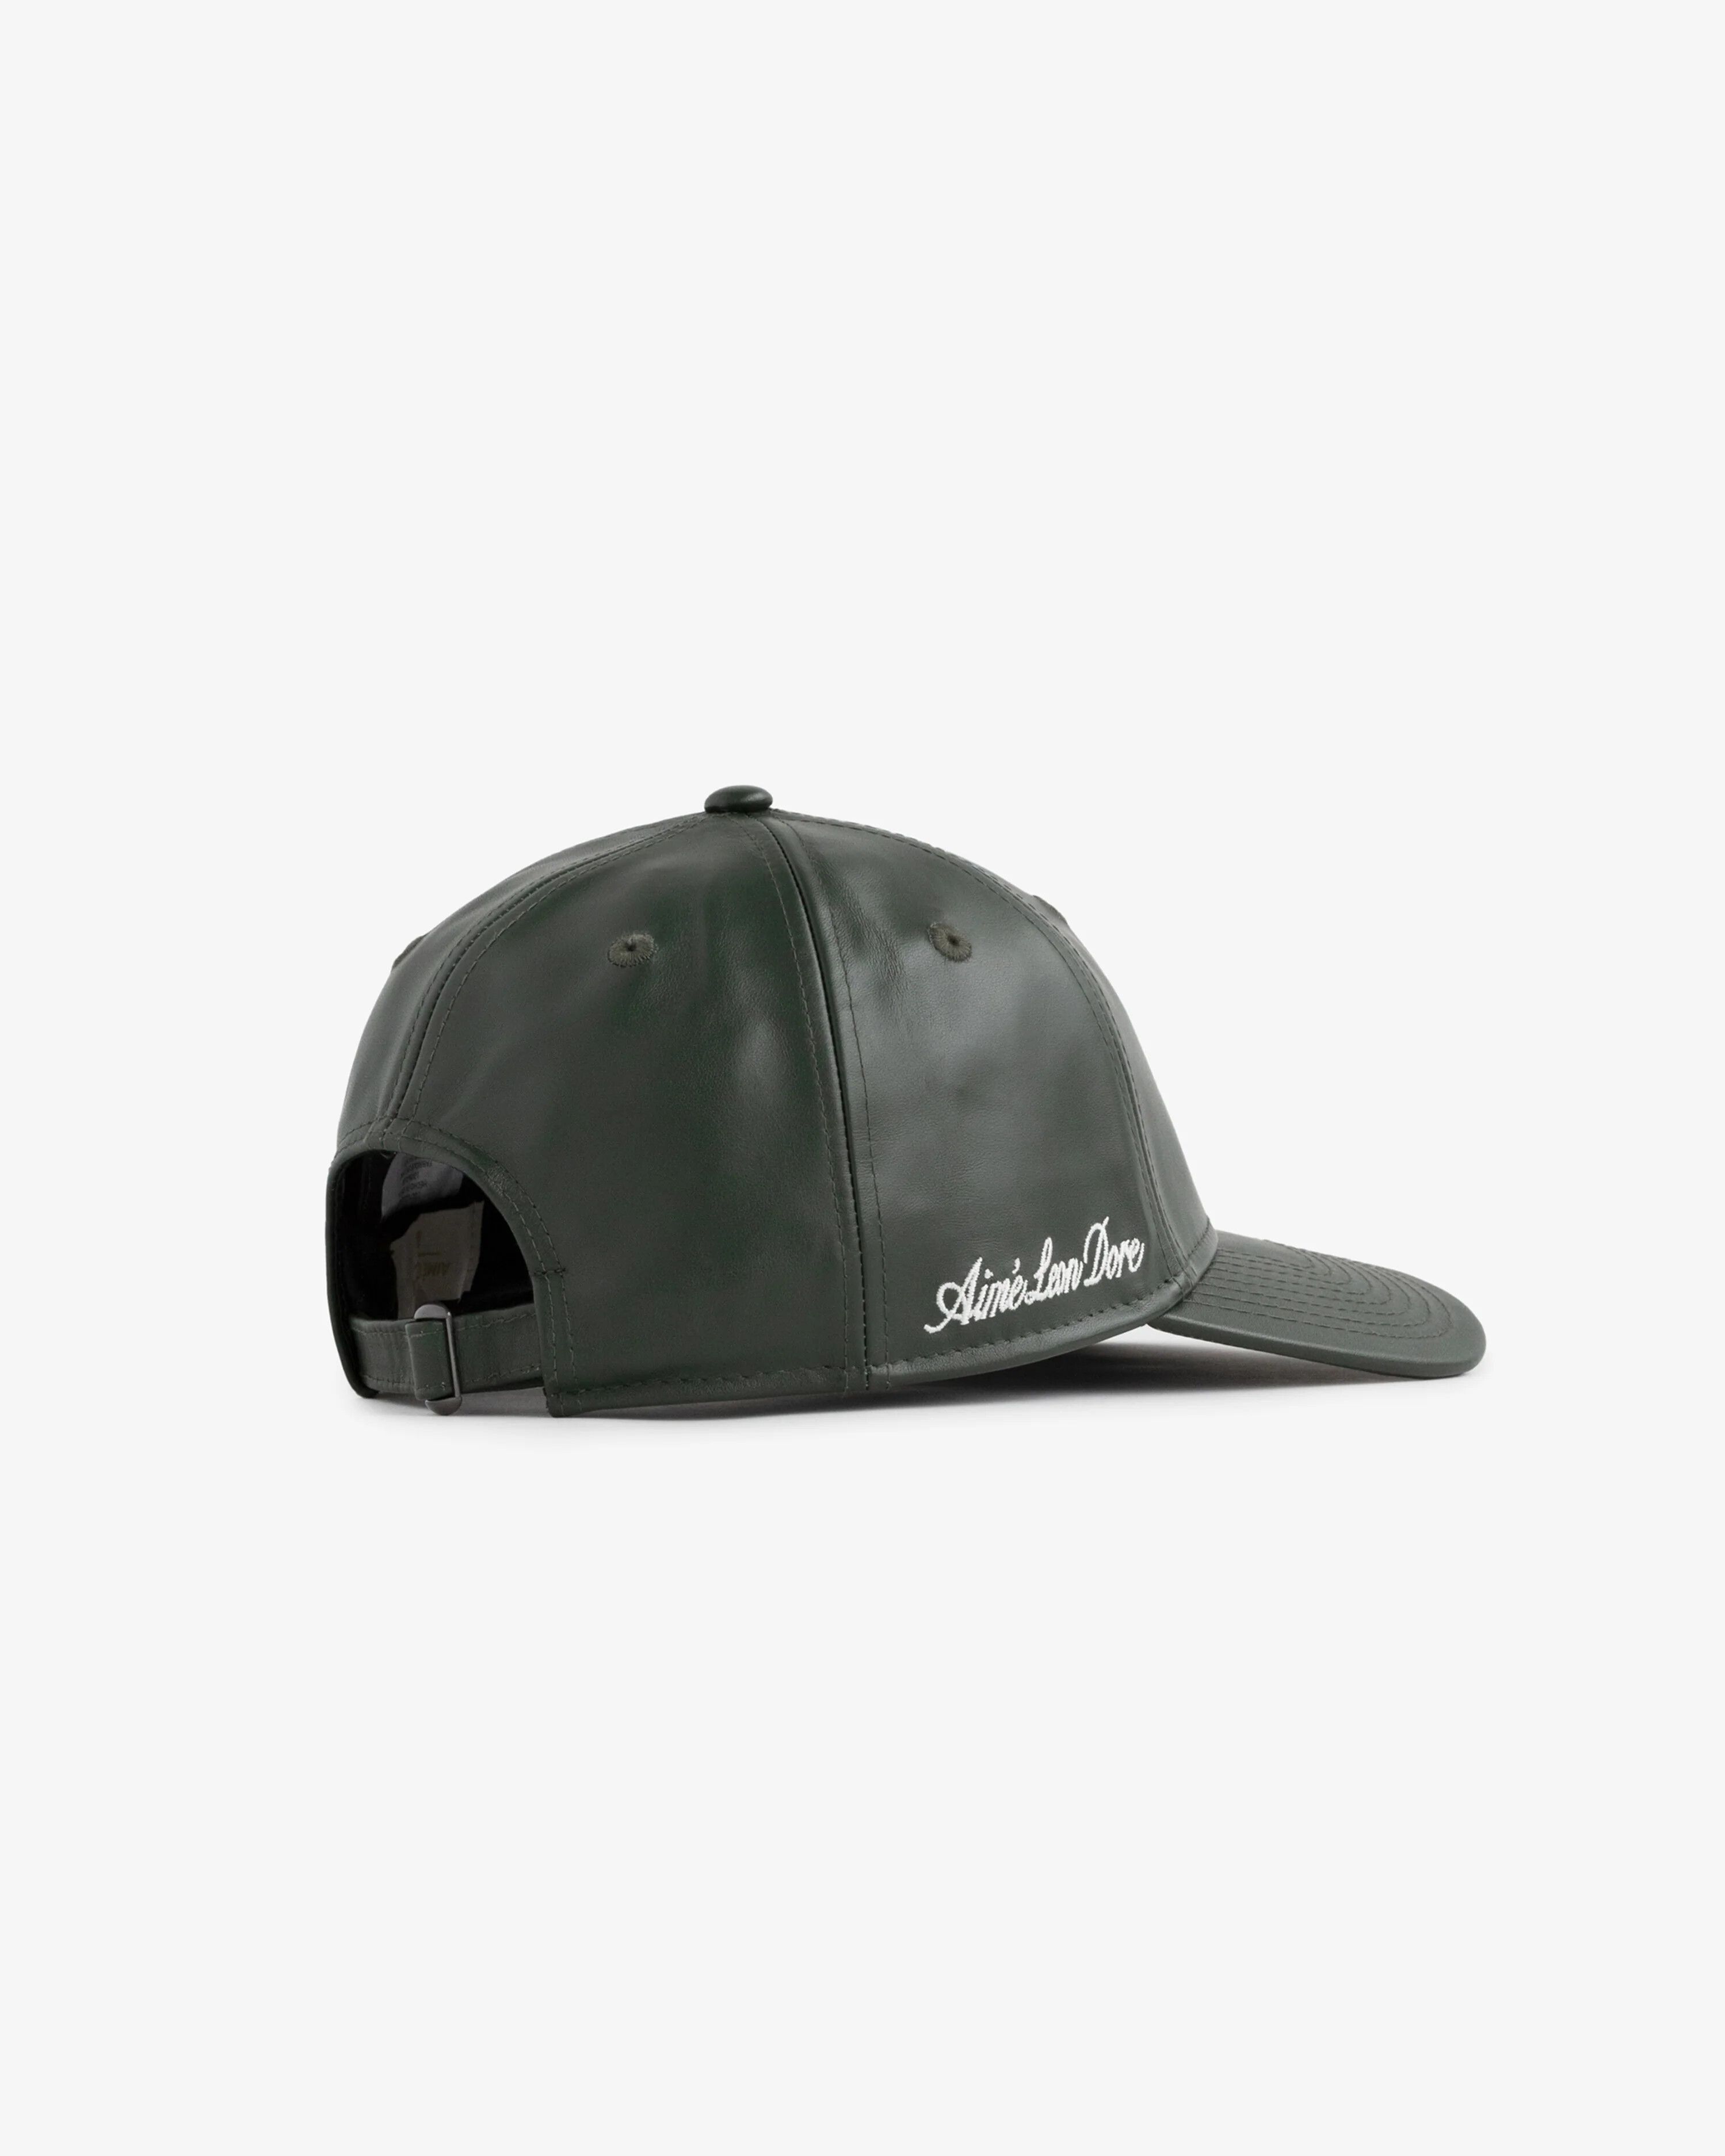 こちらはリアルレザーでしょうかALD New Era Mets Leather Ballpark Hat